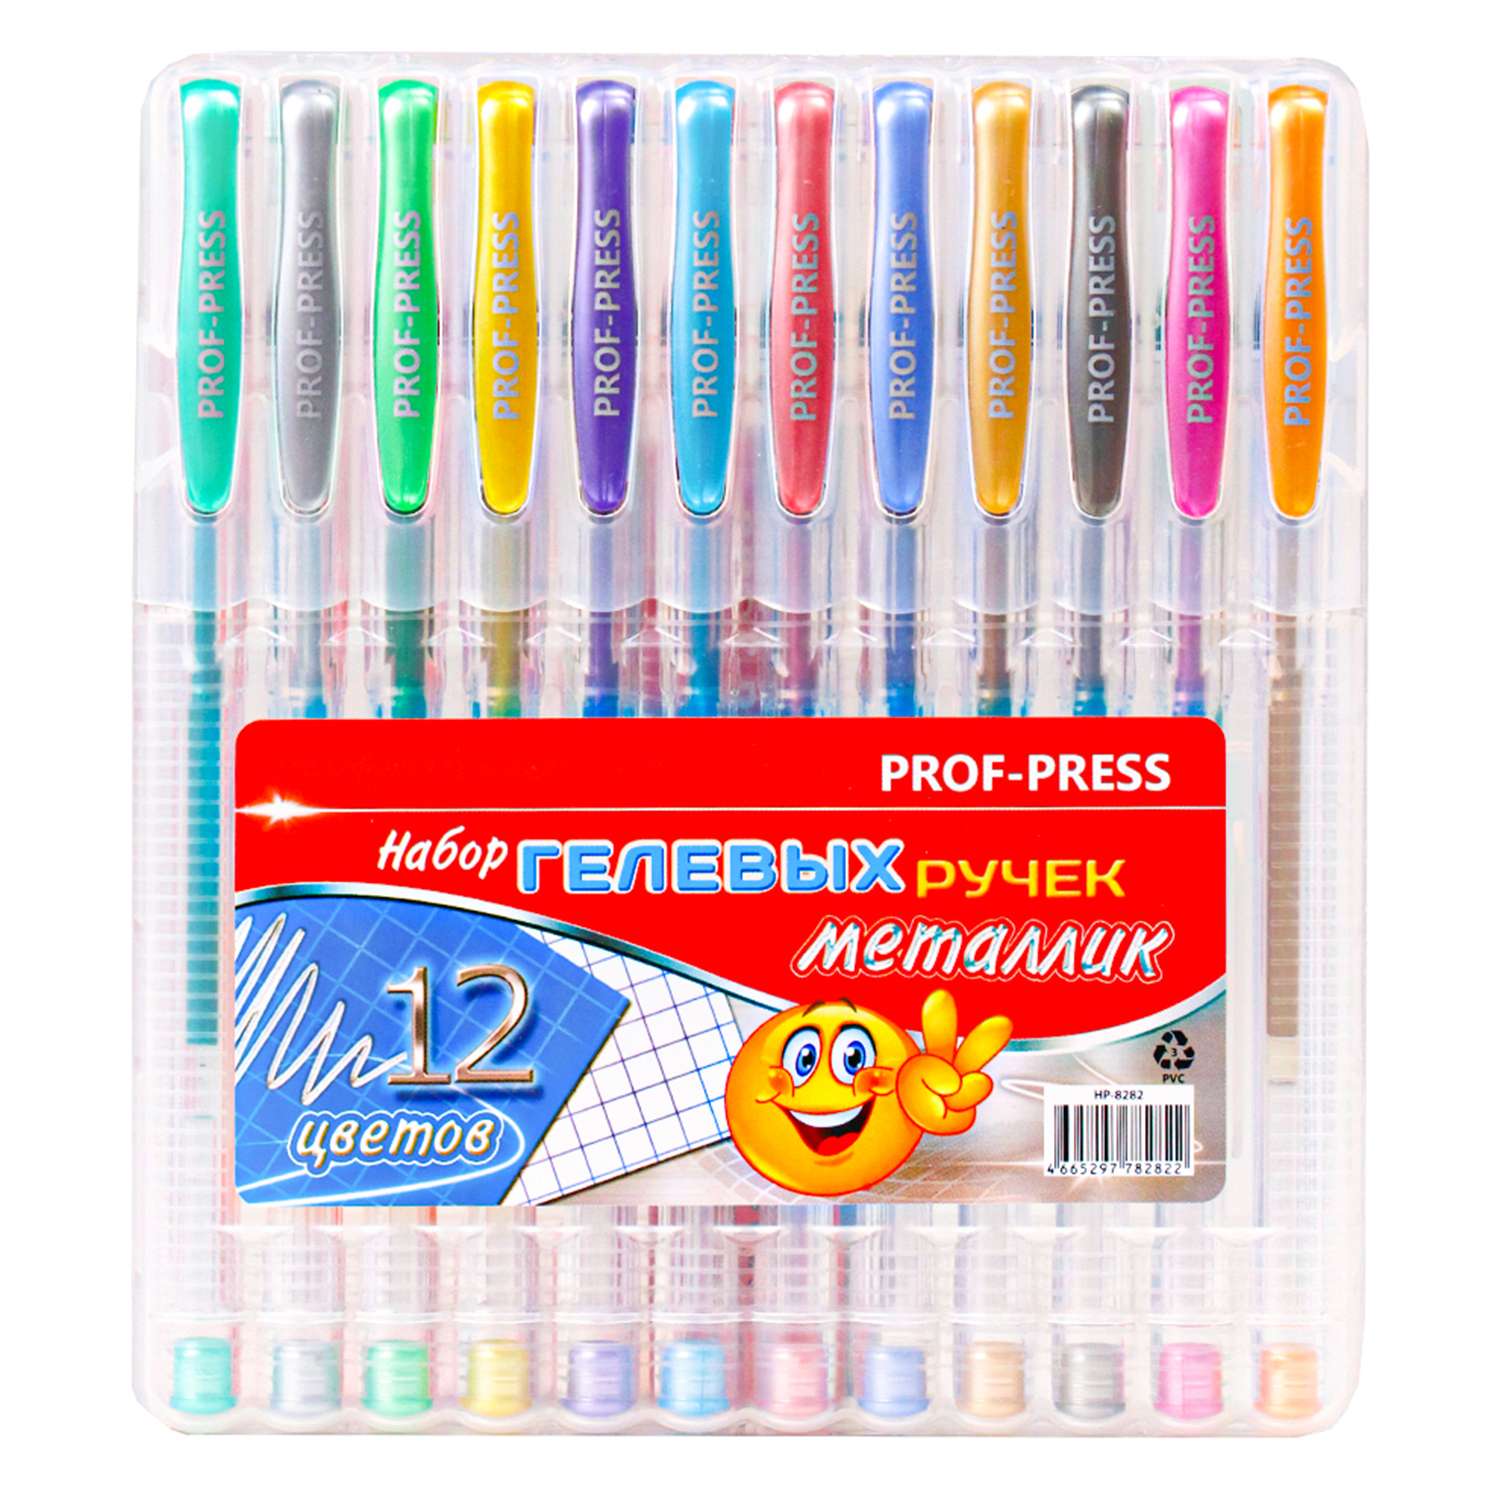 Ручки гелевые Prof-Press 12 штук цветной металлик с подвесом - фото 2